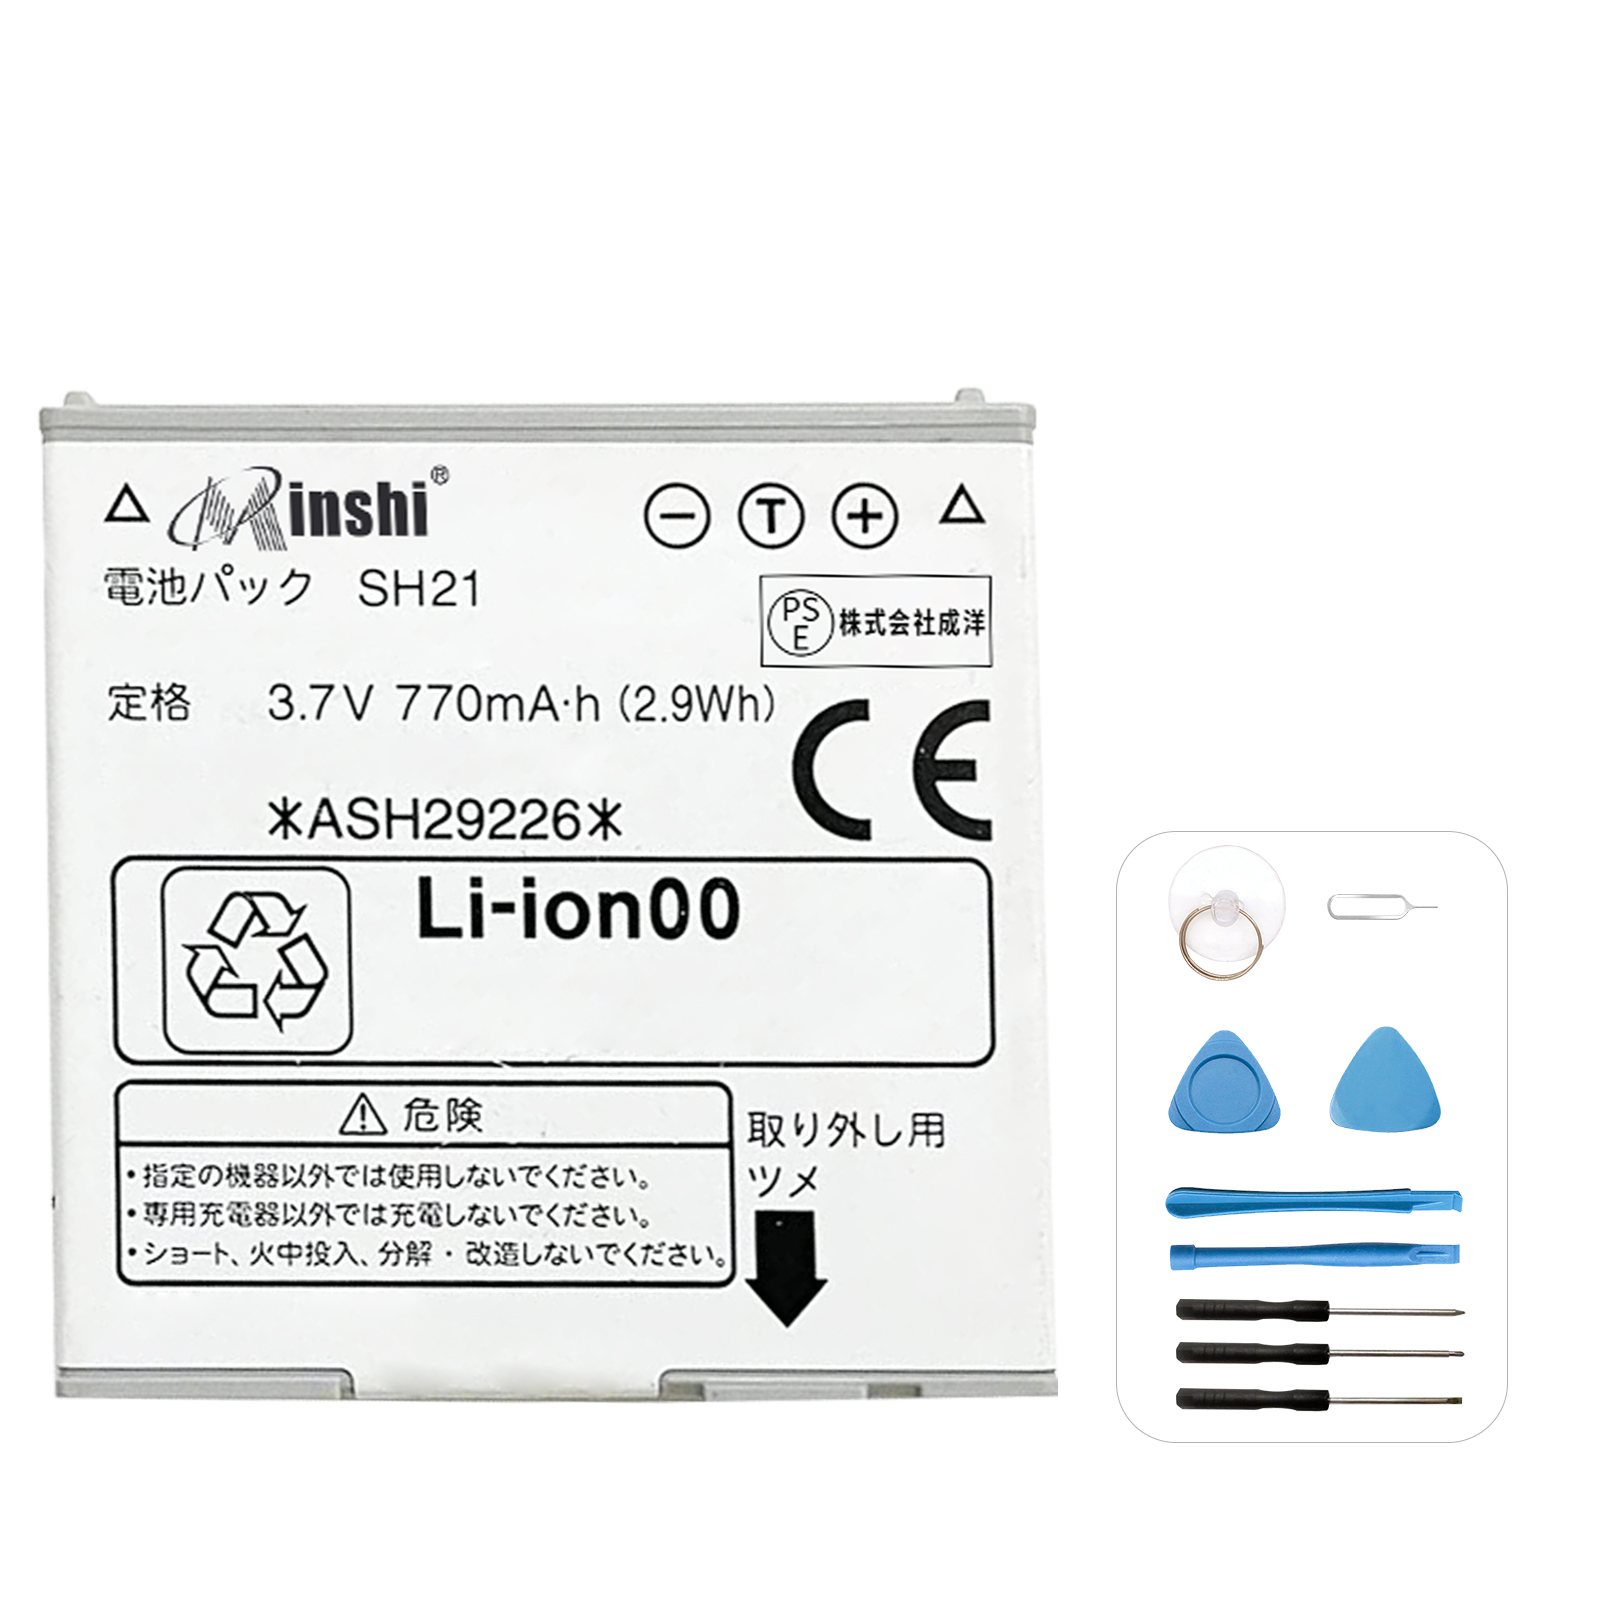 【1年保証】minshi SH21 対応 交換バッテリー 770mAh PSE認定済 高性能 互換バッテリー